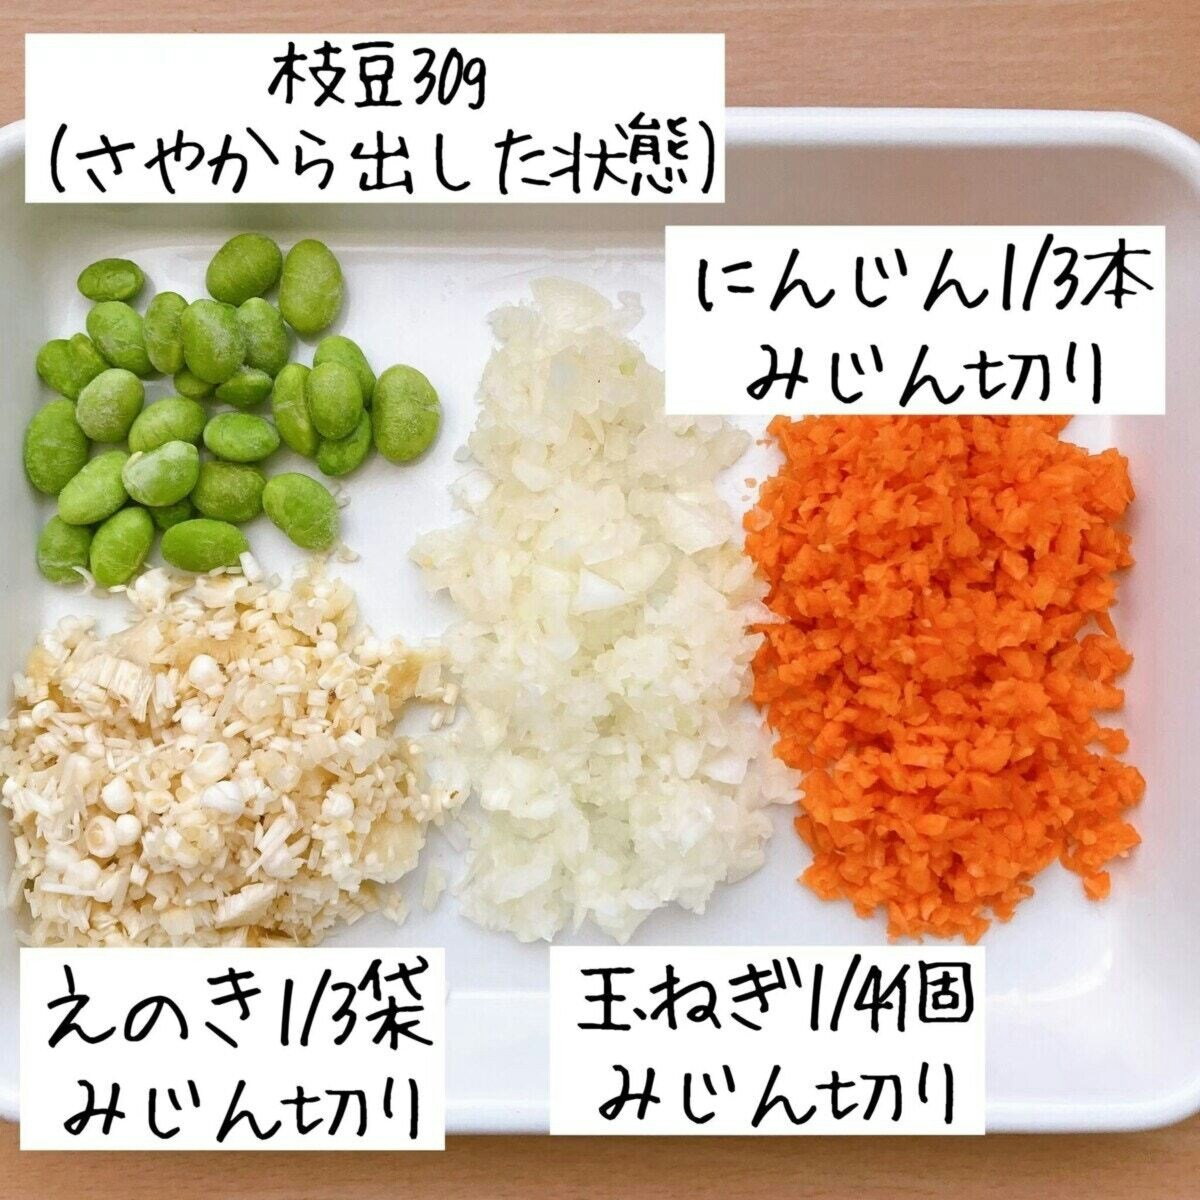 具だくさん炒り豆腐のレシピです。